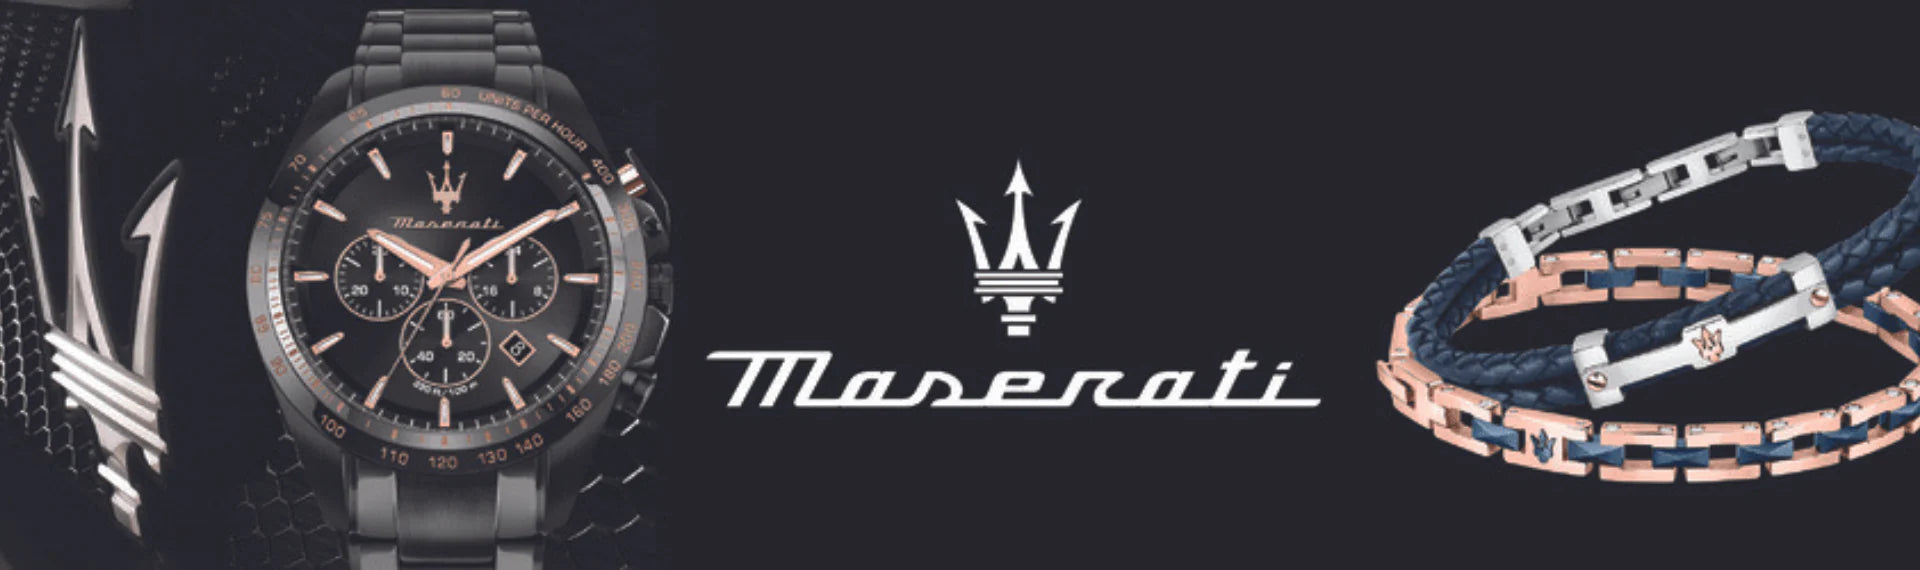 Maserati Watches for Women